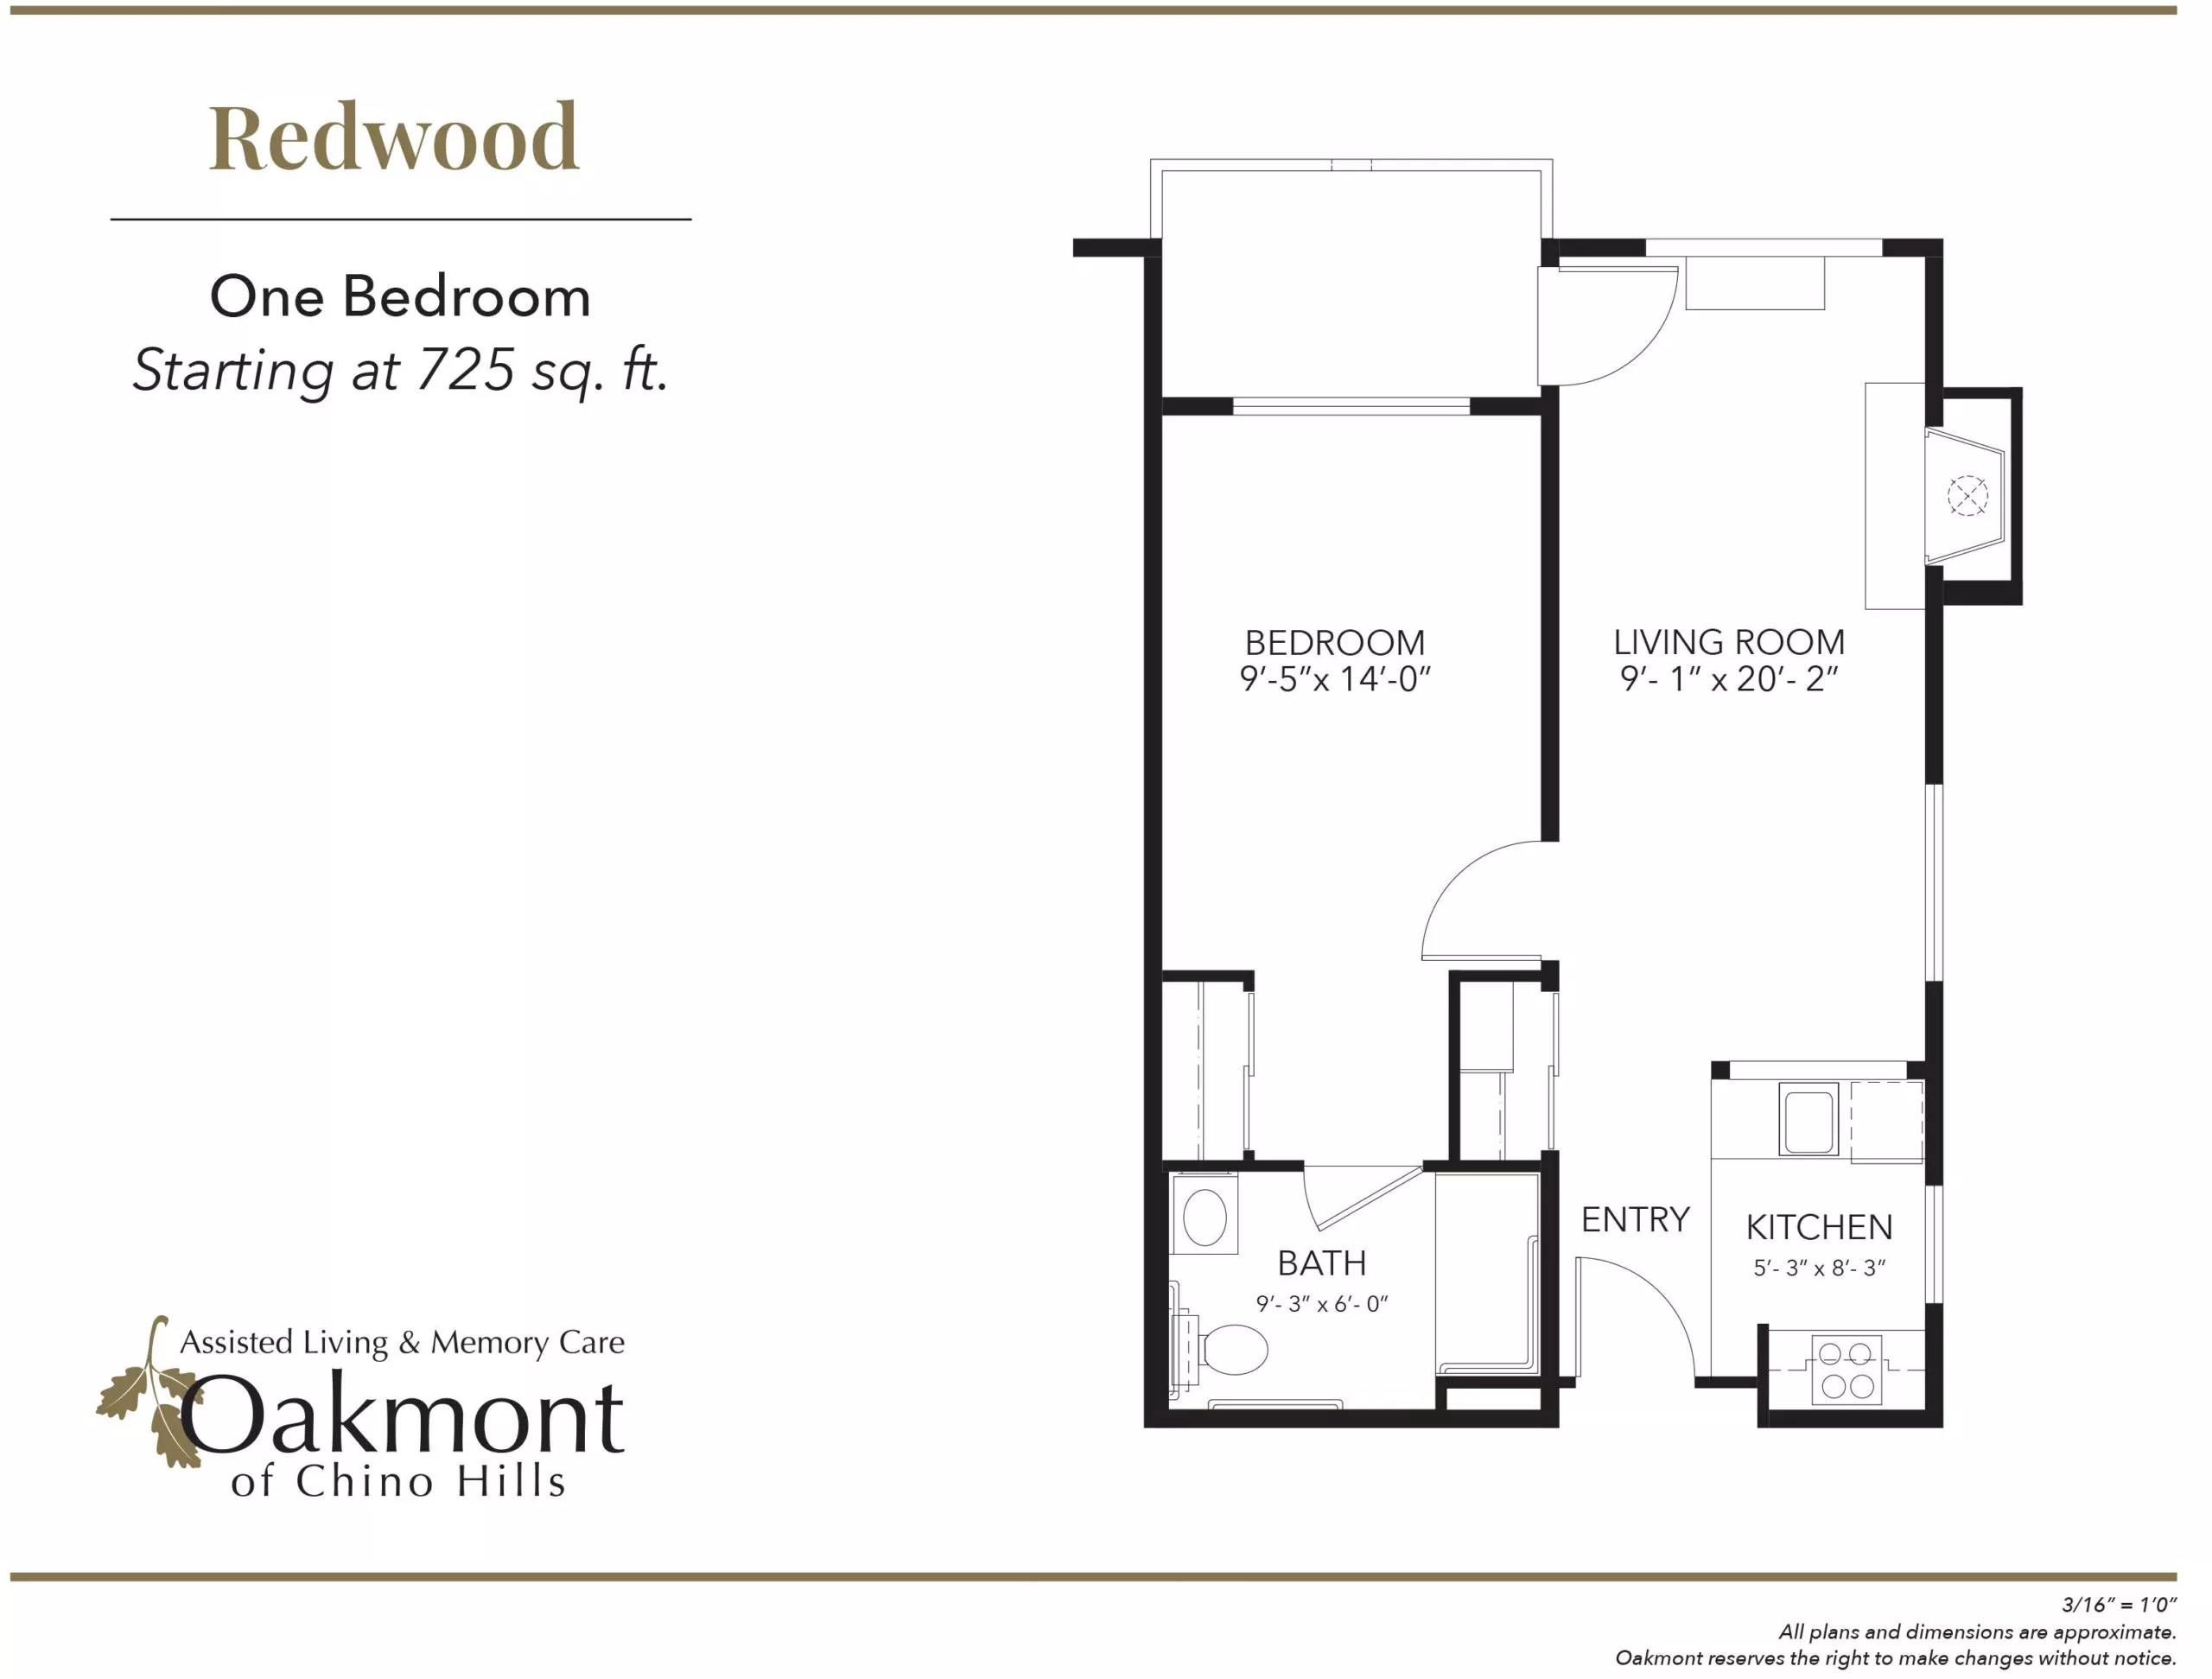 Redwood One bedroom floor plan